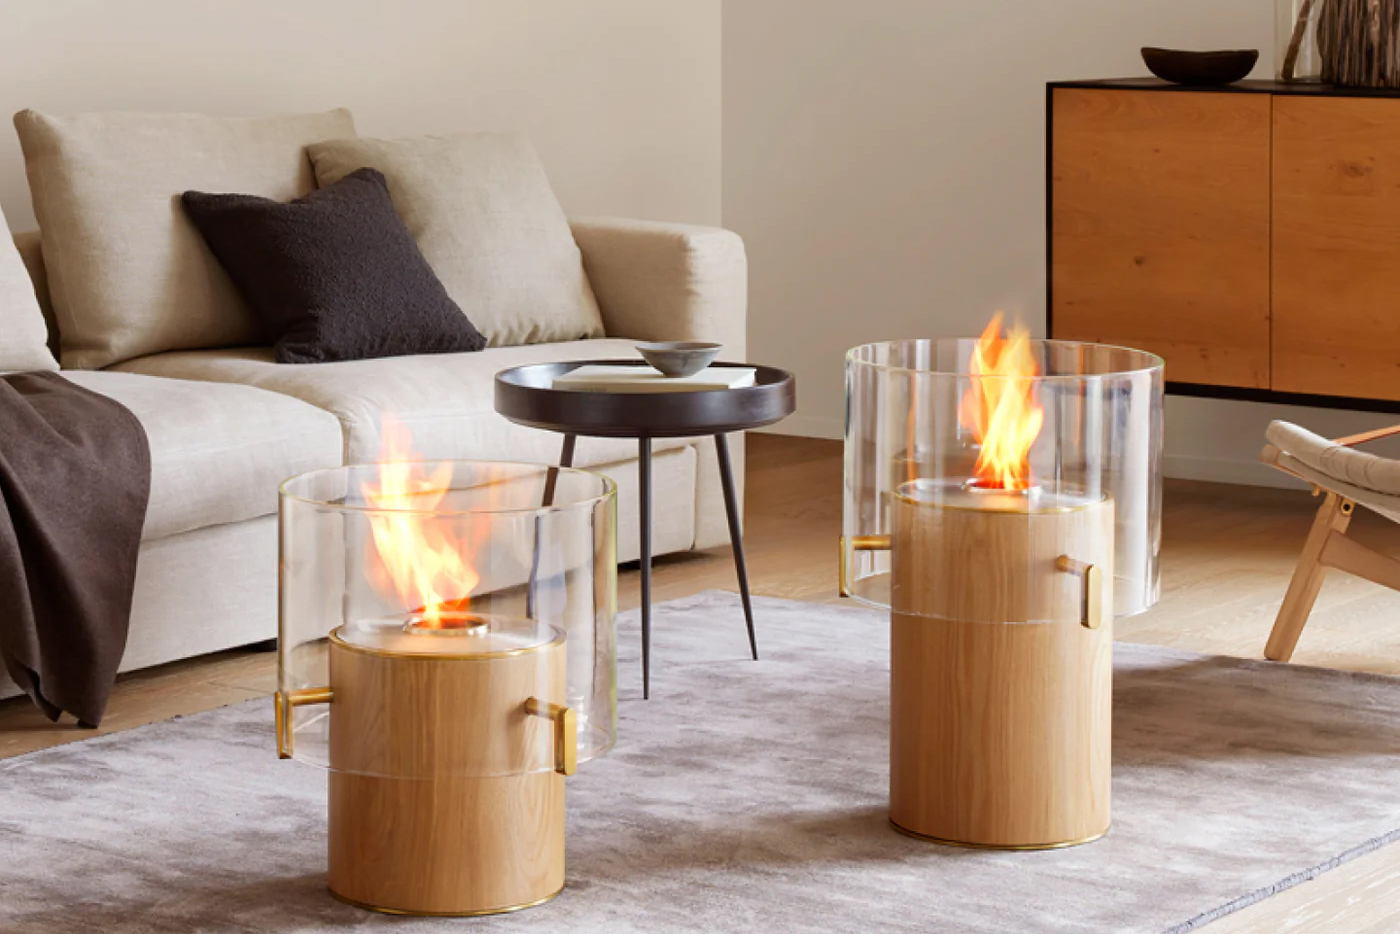 モダンなデザインの「Pillar」。部屋の中に炎が浮かぶようなバイオエタノール暖炉だ。移動させることができるのも魅力。